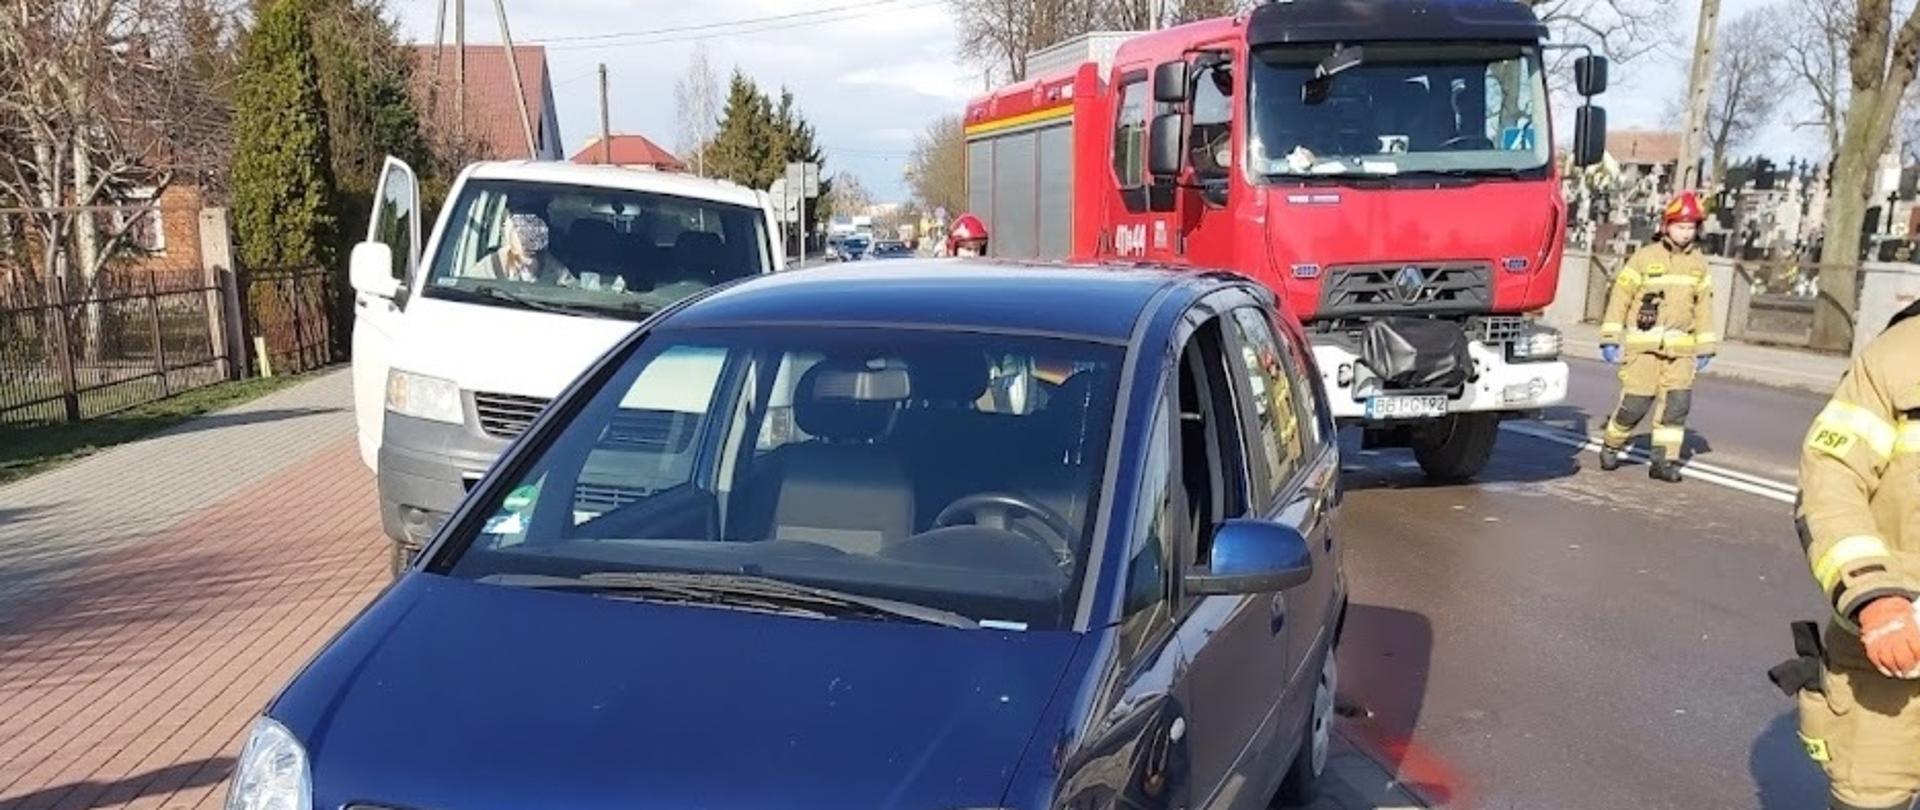 Samochód osobowy marki Opel stojący na zatoczce postojowej po zderzeniu z innym autem. W pojeździe uszkodzony jest prawa przednia część (zderzak, nadkole). W tle samochód ratowniczo-gaśniczy.